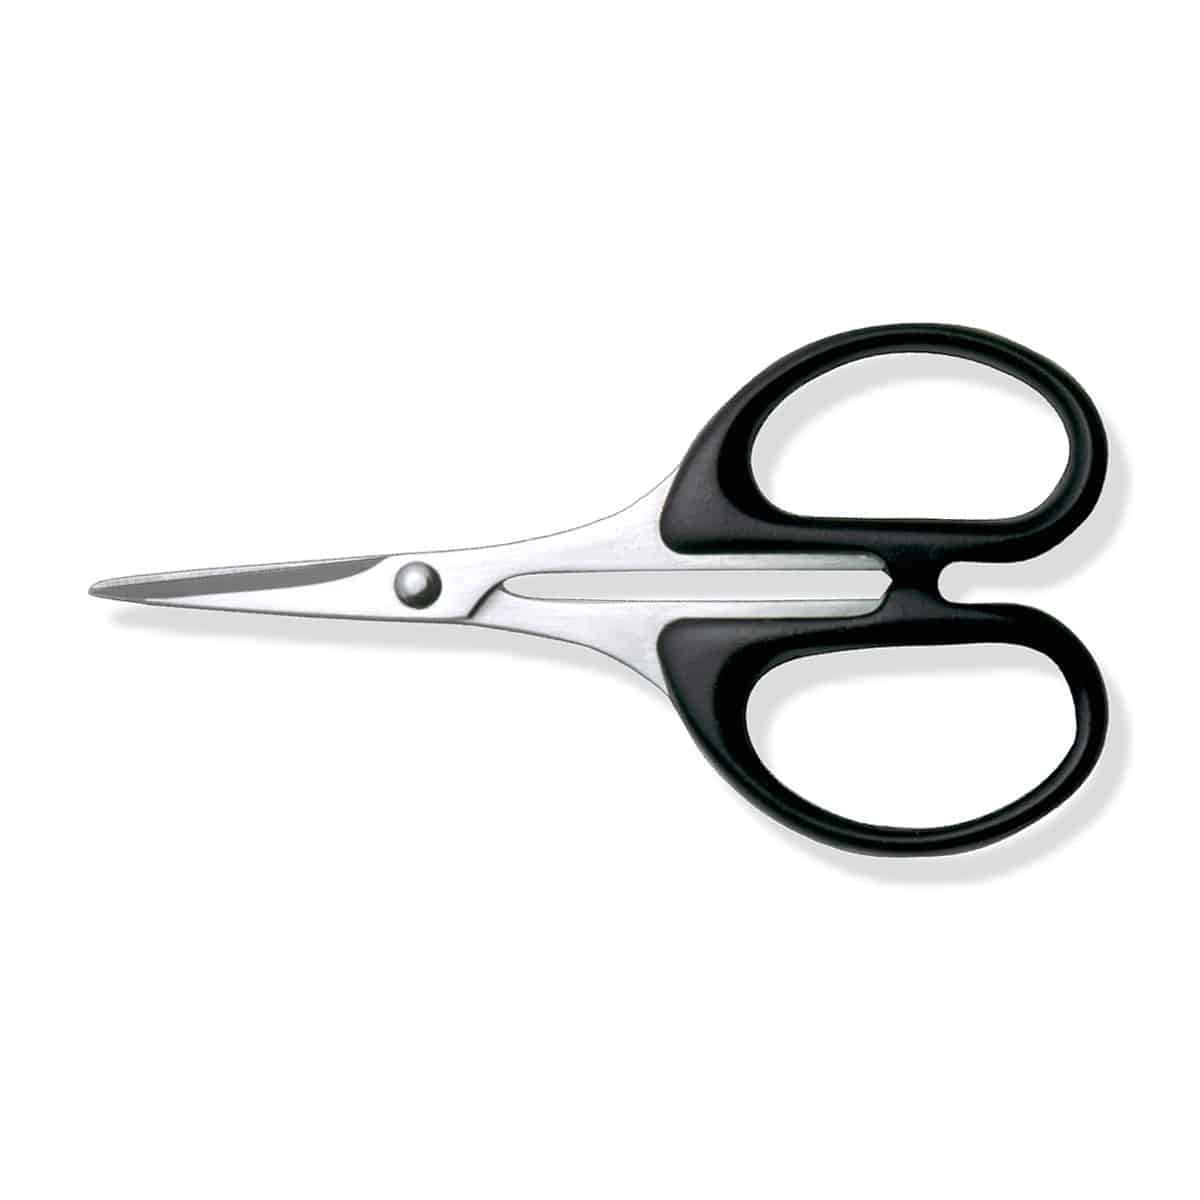 Buy Adult Scissors Online